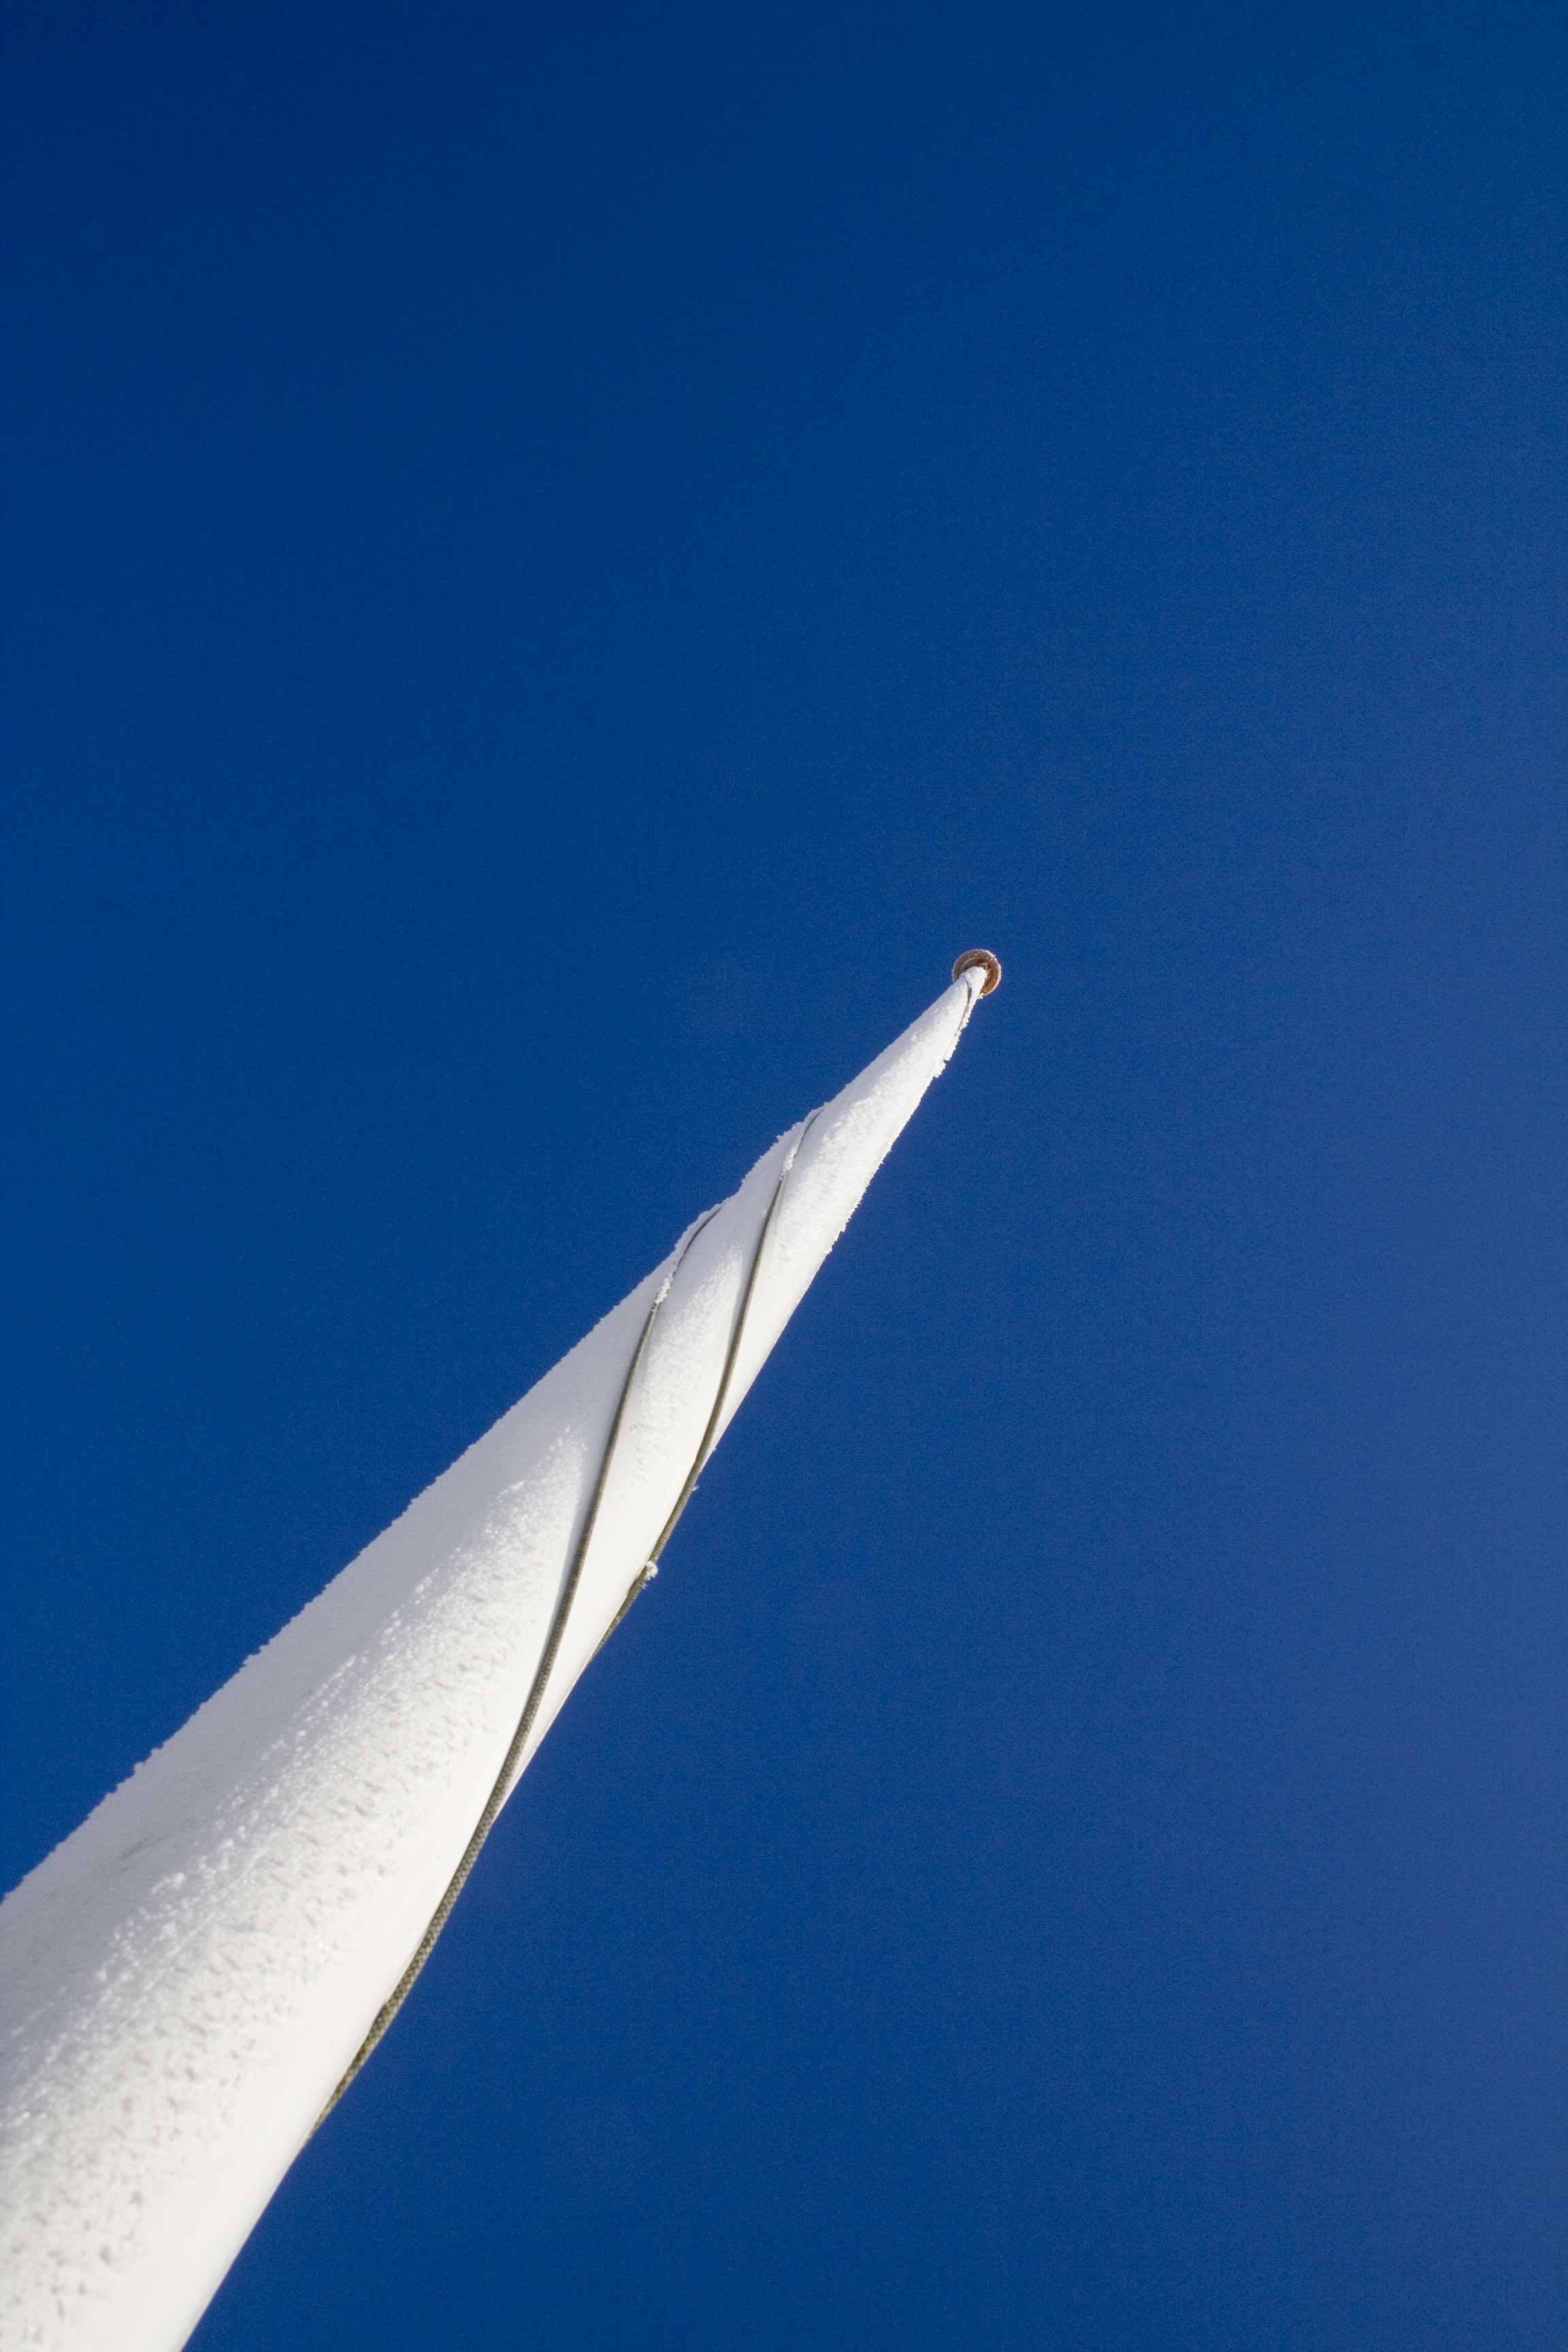 Pole against the sky, Blue, Flag, High, Long, HQ Photo